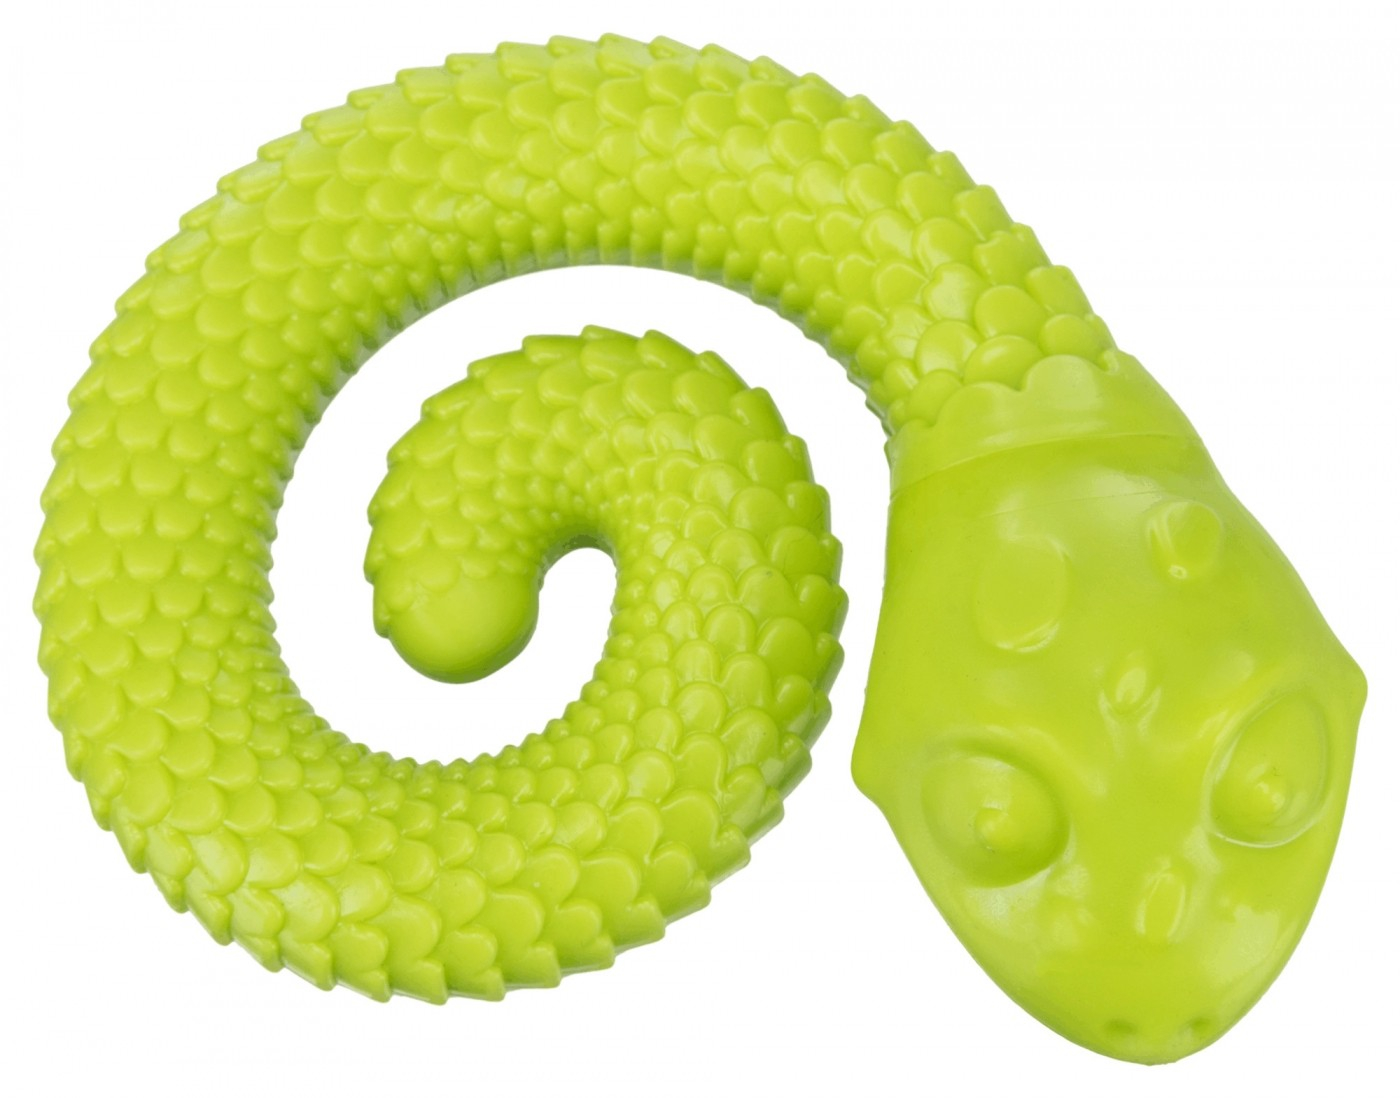 Snack Snake in rubber, diameter 18 cm